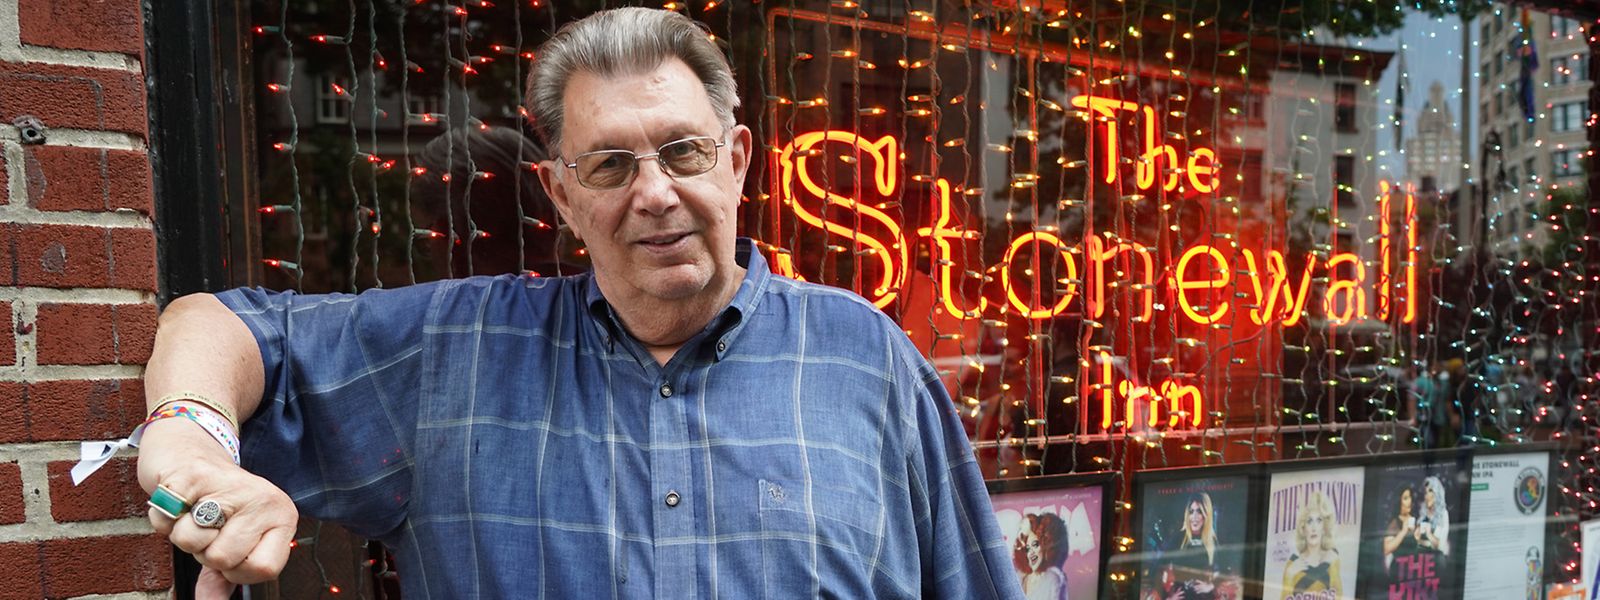 Tree war schon vor 50 Jahren Stammgast im Stonewall Inn und arbeitet dort auch 50 Jahre nach den Ausschreitungen immer noch regelmäßig als Barkeeper.